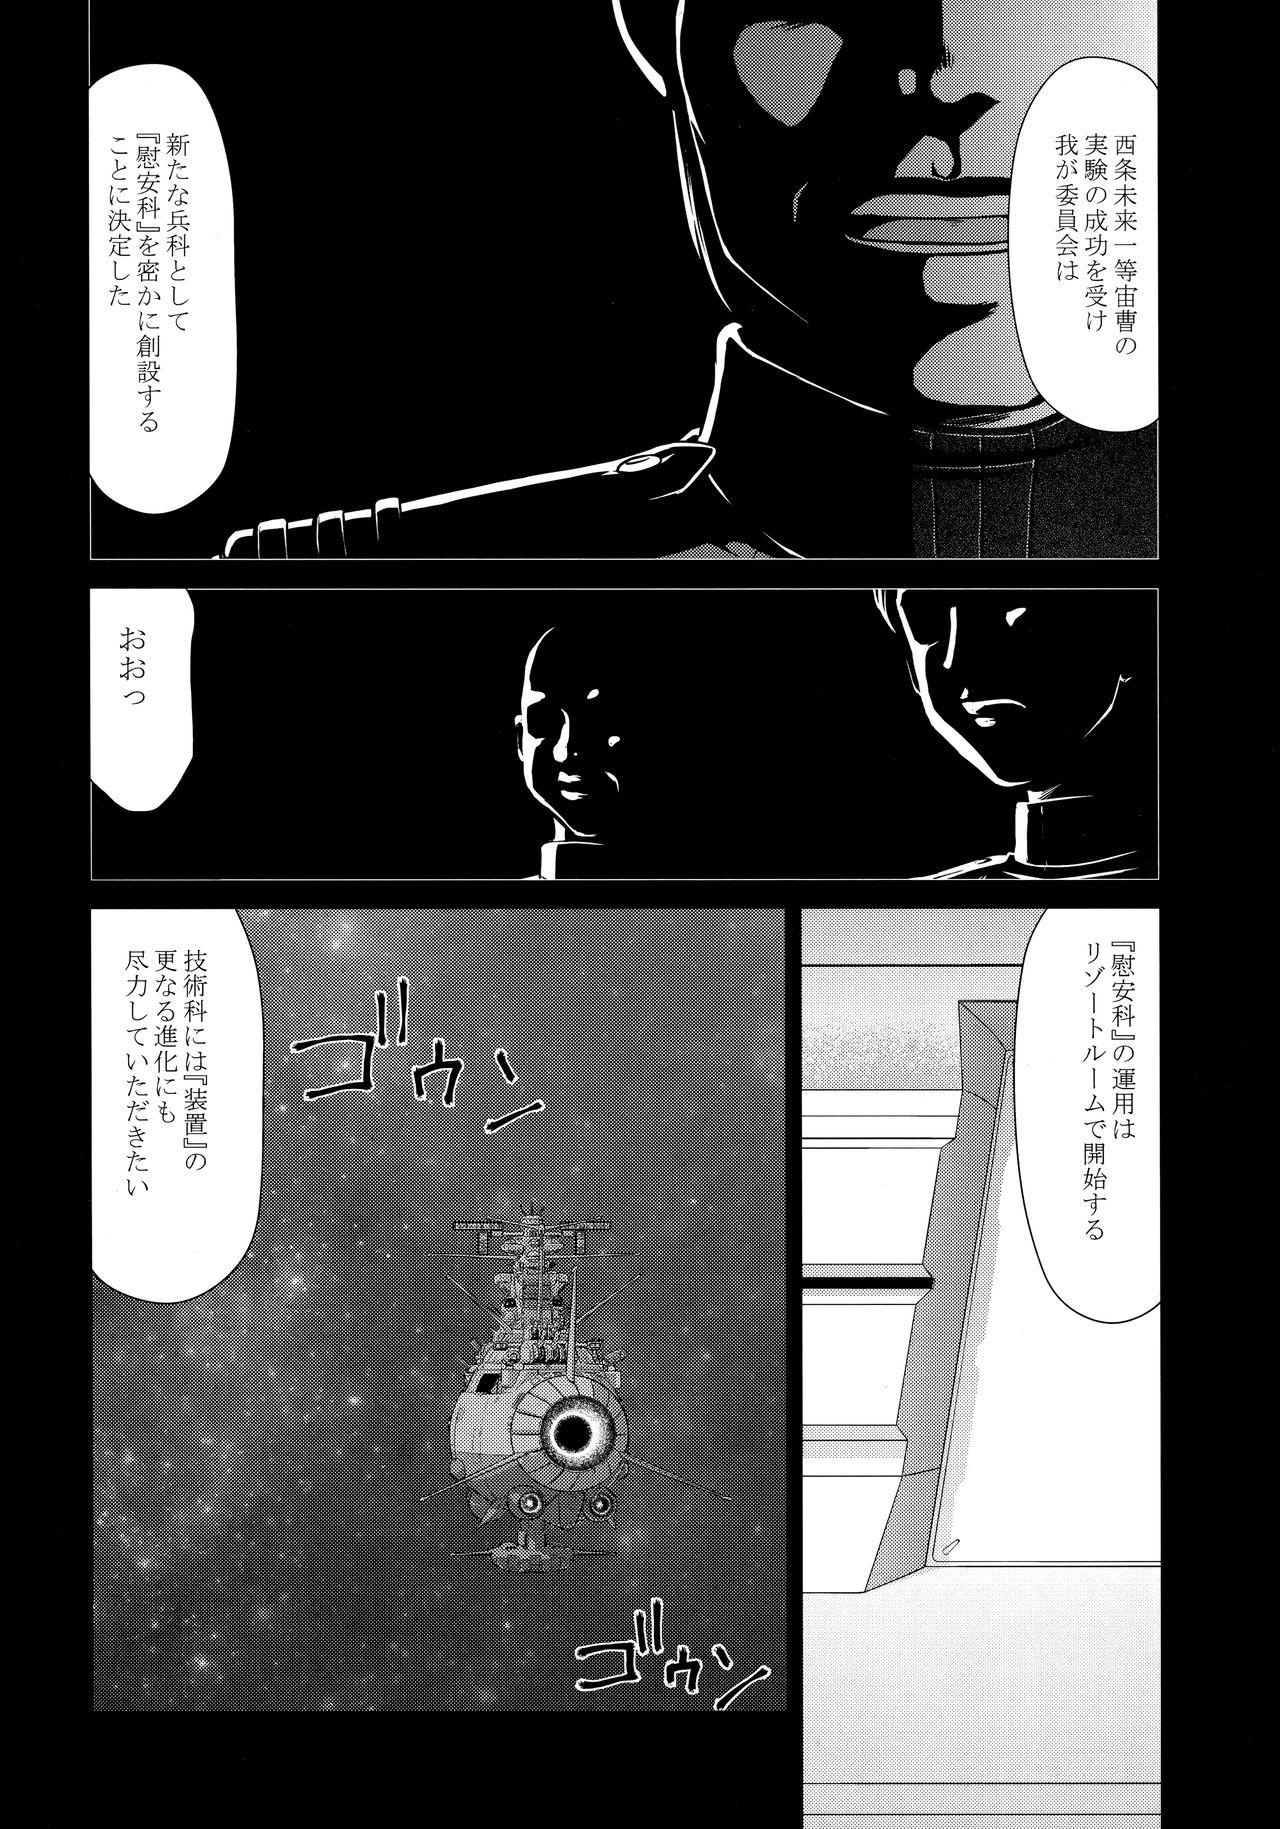 Asia Yuki no Shizuku Mesu - Space battleship yamato Space battleship yamato 2199 Huge Ass - Page 11